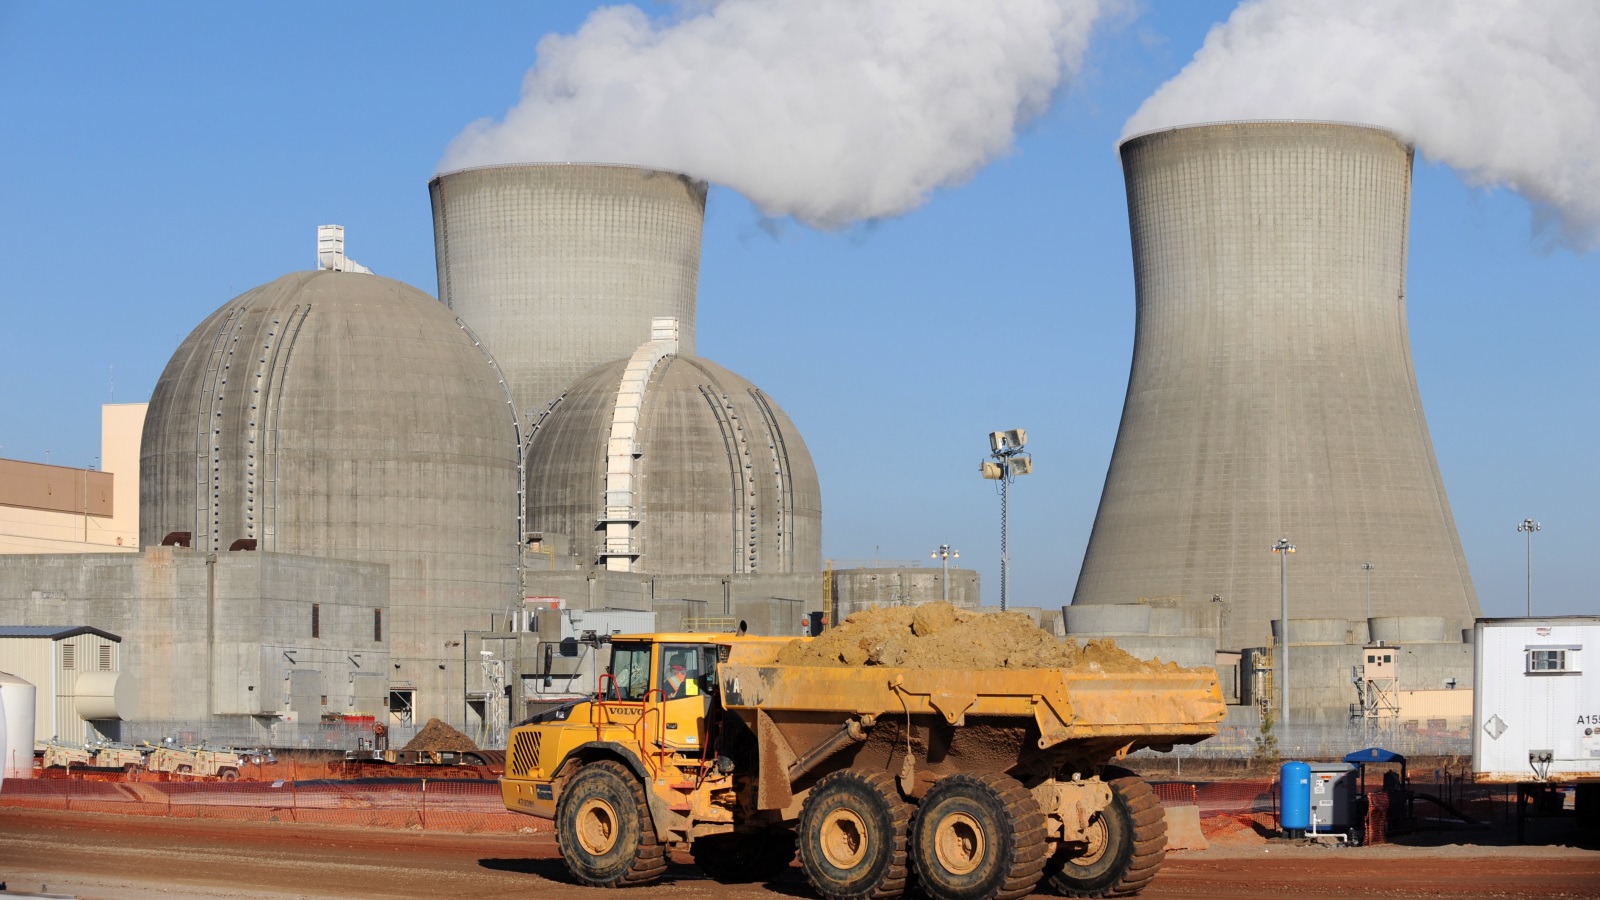 أبراج تبريد في محطة فوغتل للطاقة النووية التابعة لجورج باور، تستخدم تكنولوجيا مفاعلات المياه المضغوط المتقدمة من وستنغهاوس (A-P1000) (الأوروبية)